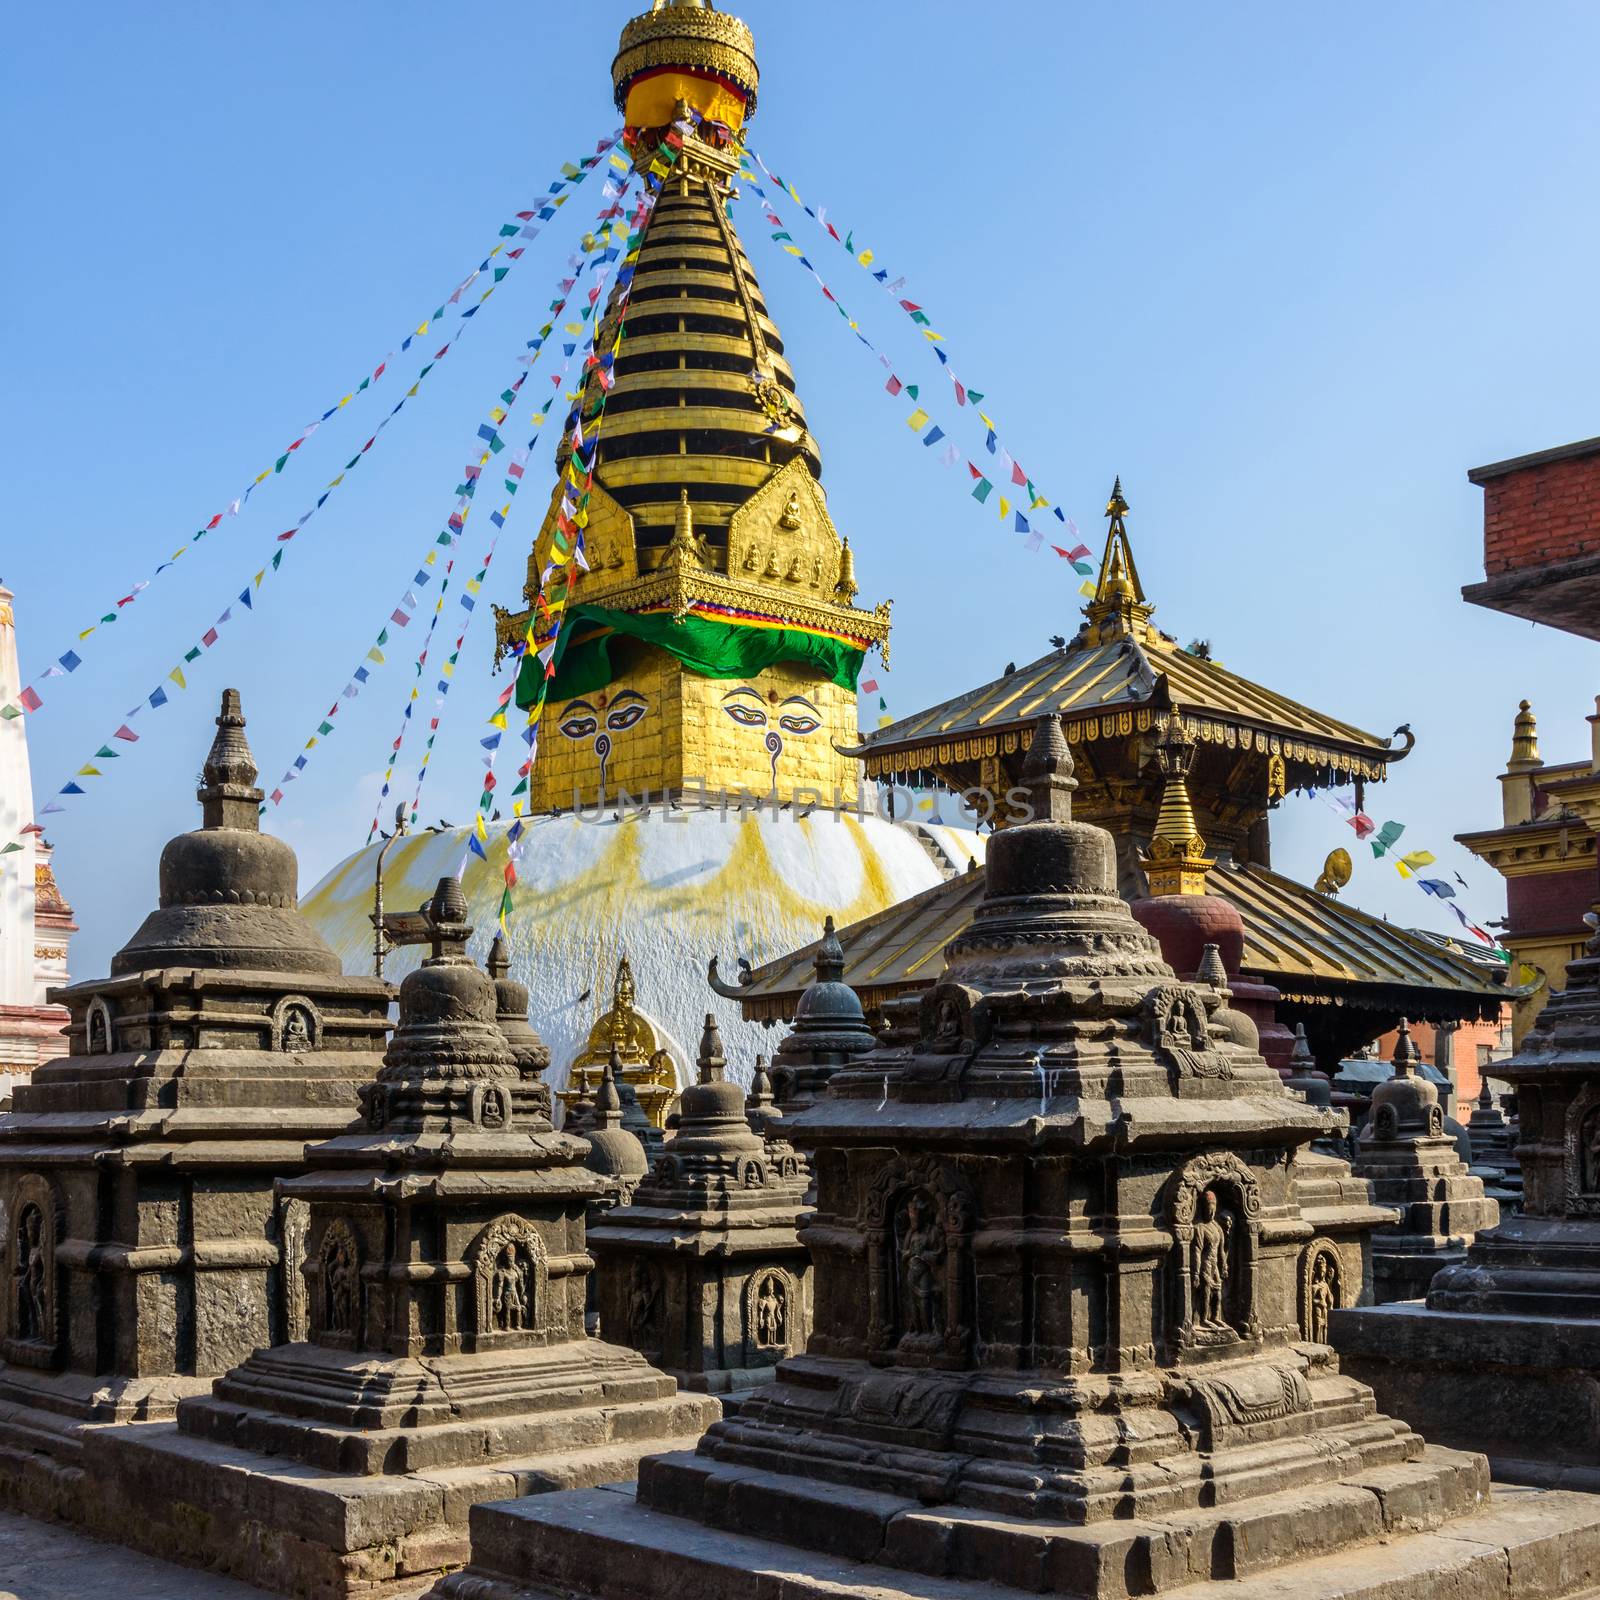 Swayambhunath stupa in Kathmandu, Nepal (before the 2015 earthquakes)